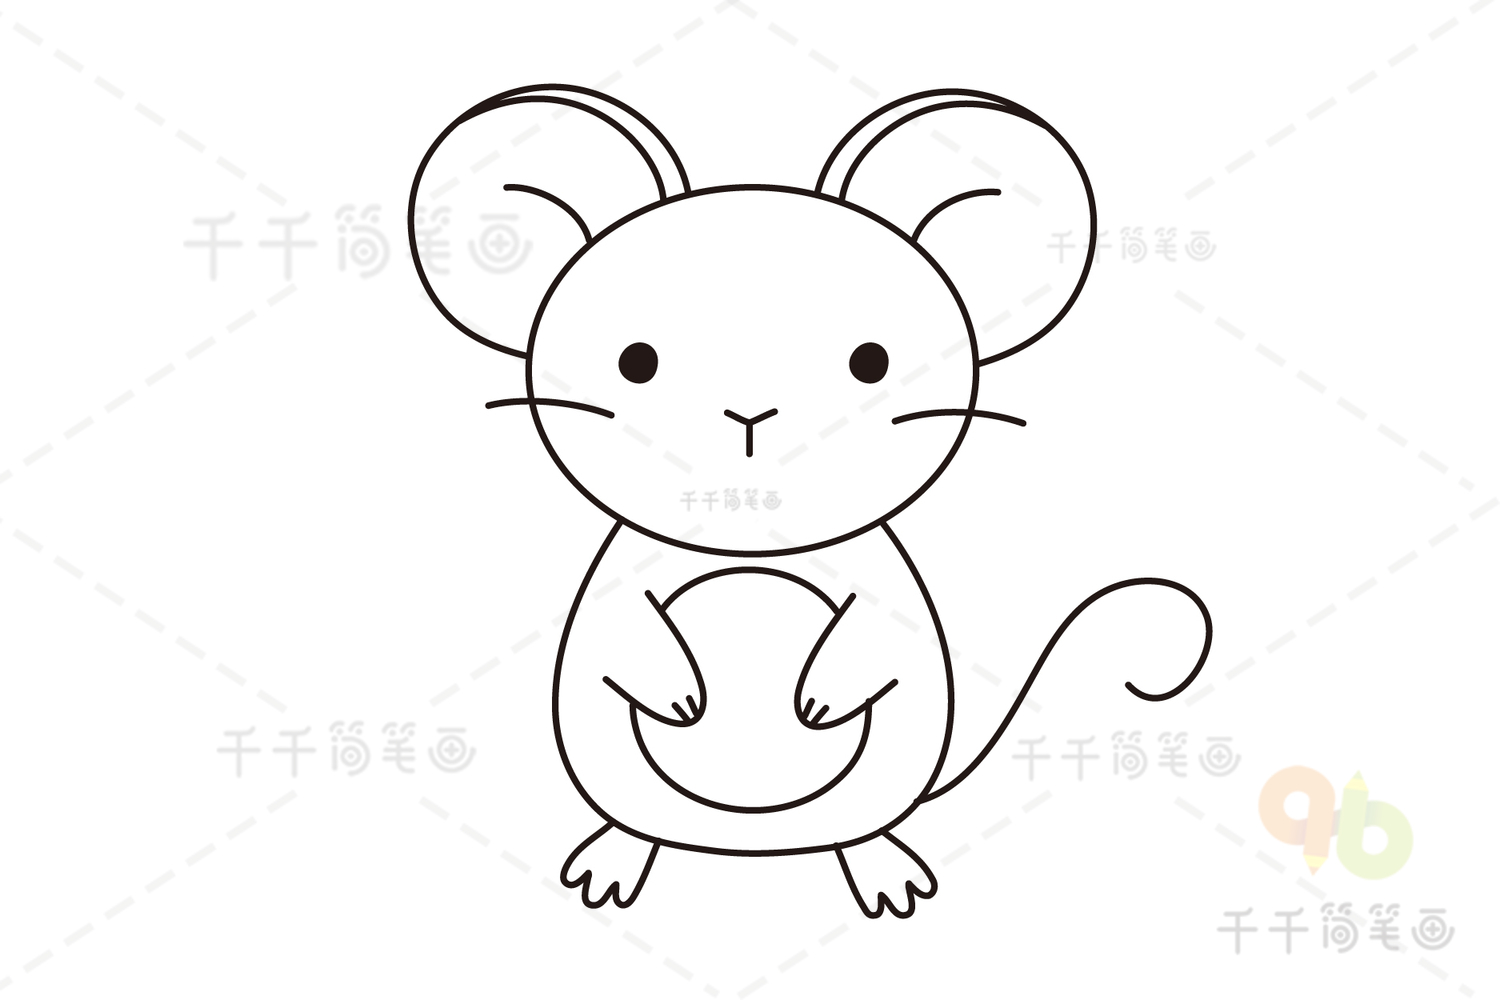 老鼠简笔画可爱呆萌图片